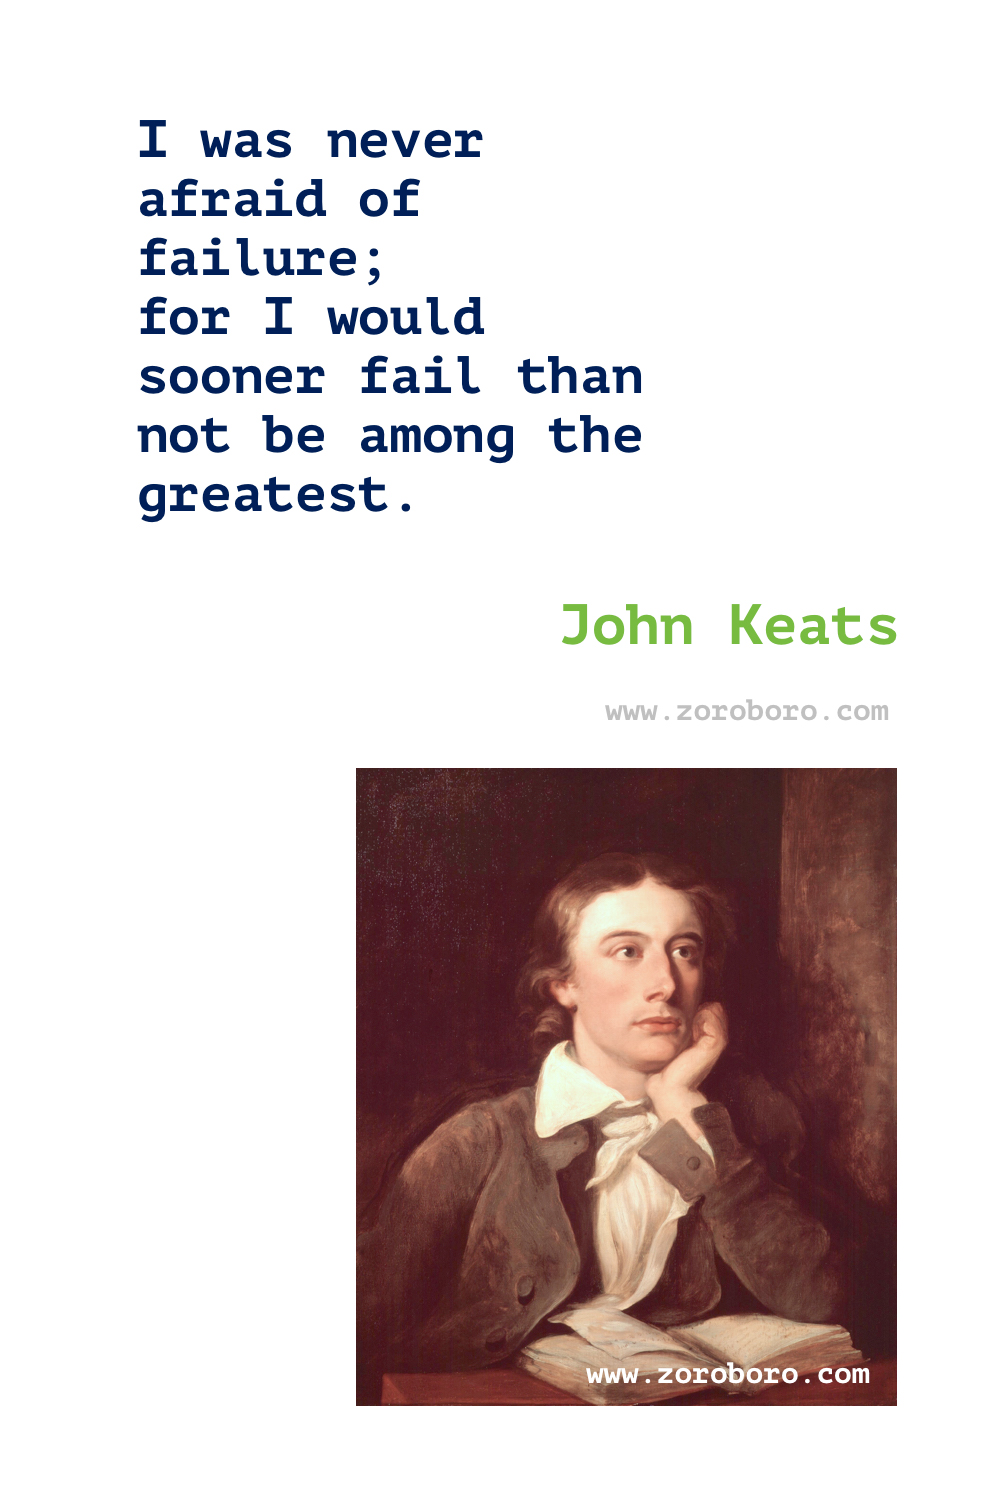 John Keats Quotes. John Keats Poems. John Keats Poetry. John Keats Writing Books Quotes. Poems of John Keats on Love, Beauty & Death